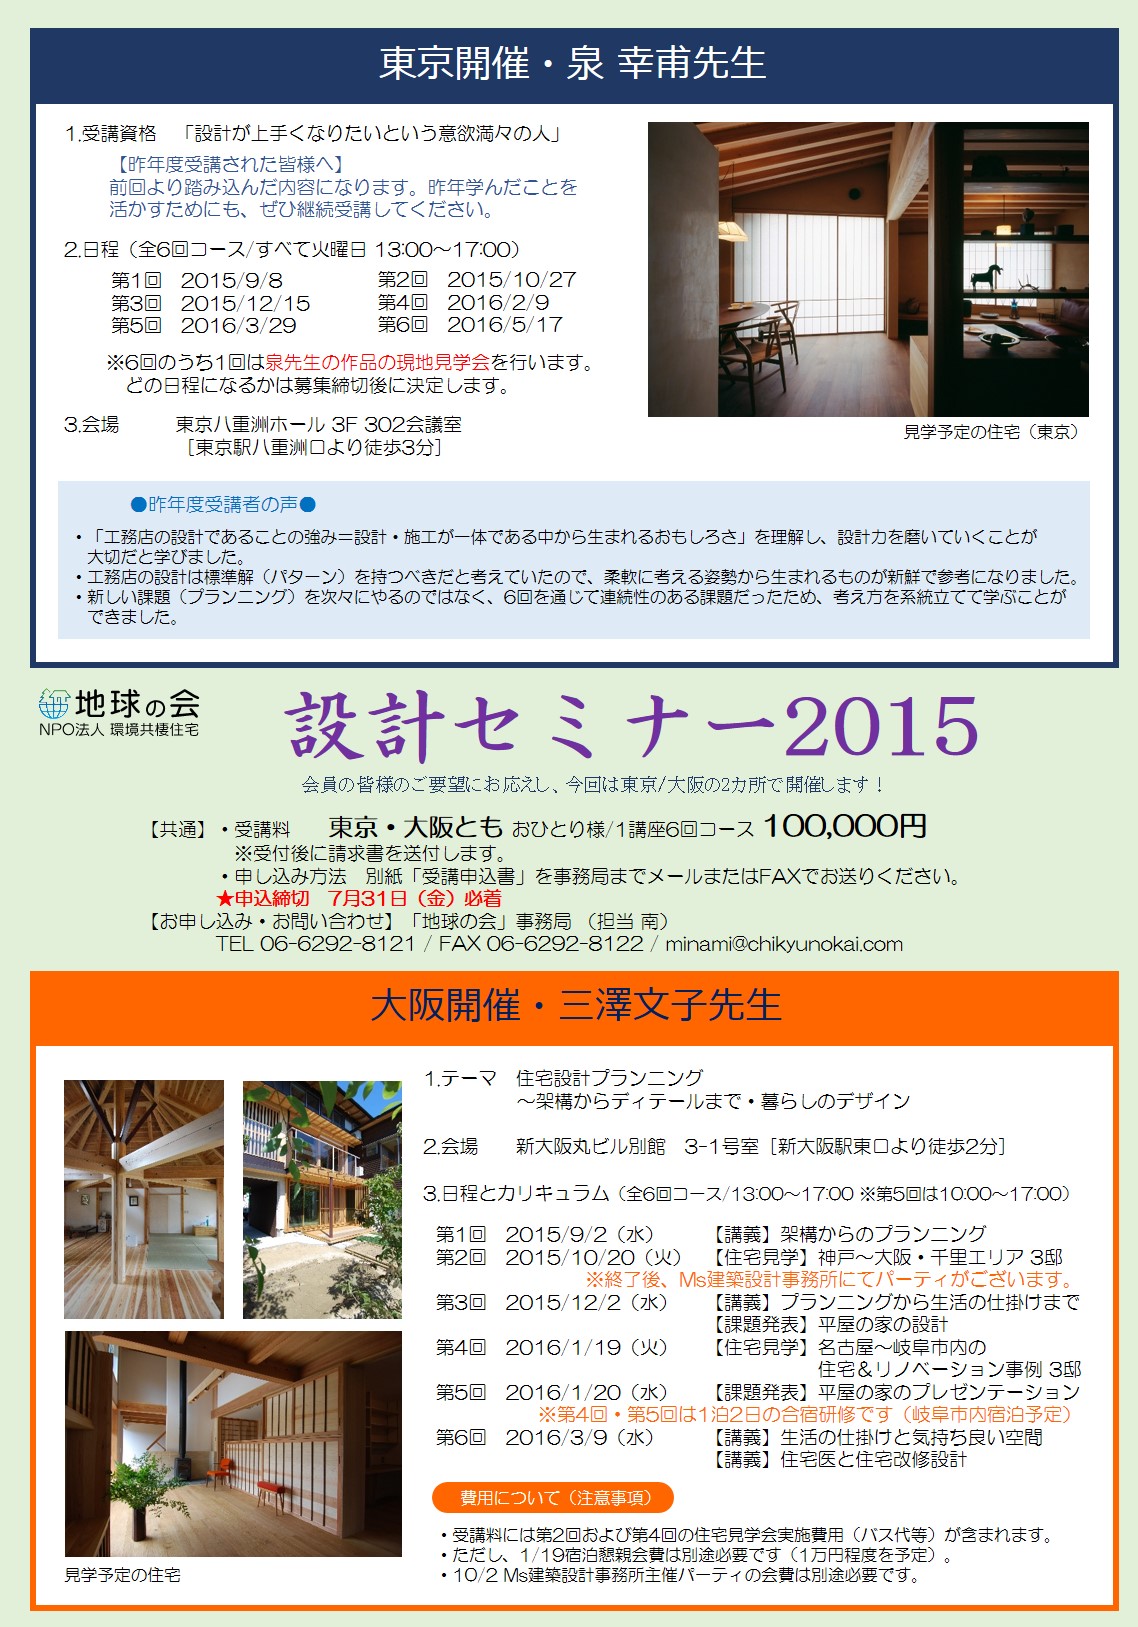 http://www.chikyunokai.com/topics/files/sekkei2015.jpg